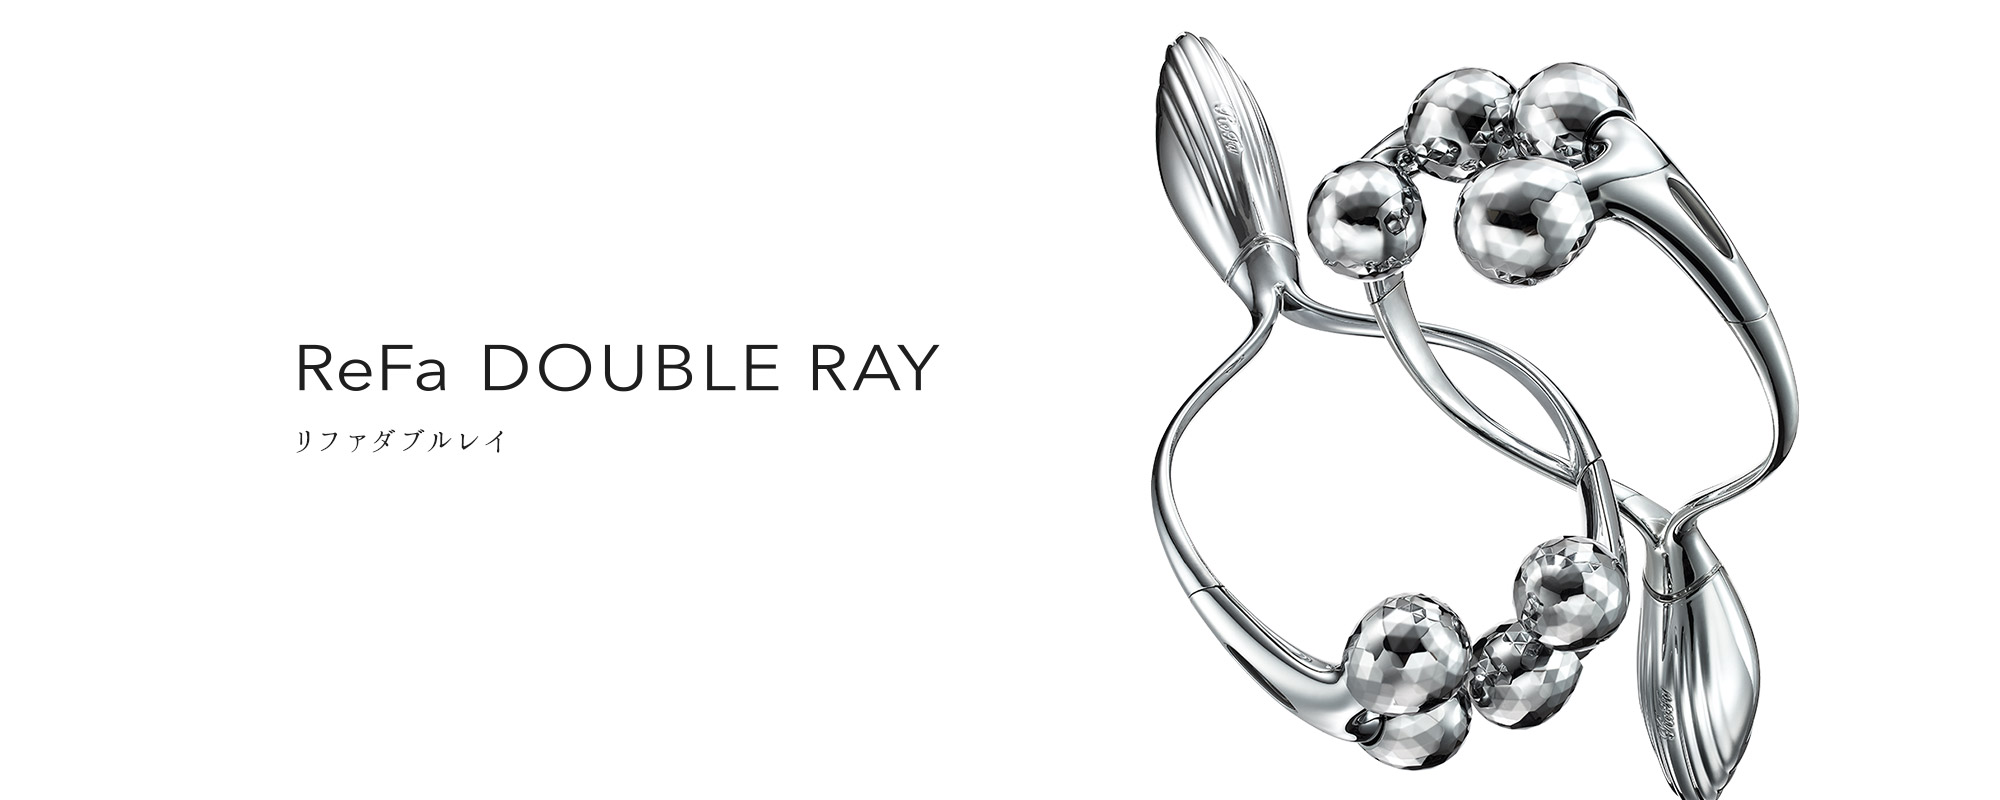 リファダブルレイ - ReFa DOUBLE RAY | 商品情報 | ReFa（リファ）公式ブランドサイト